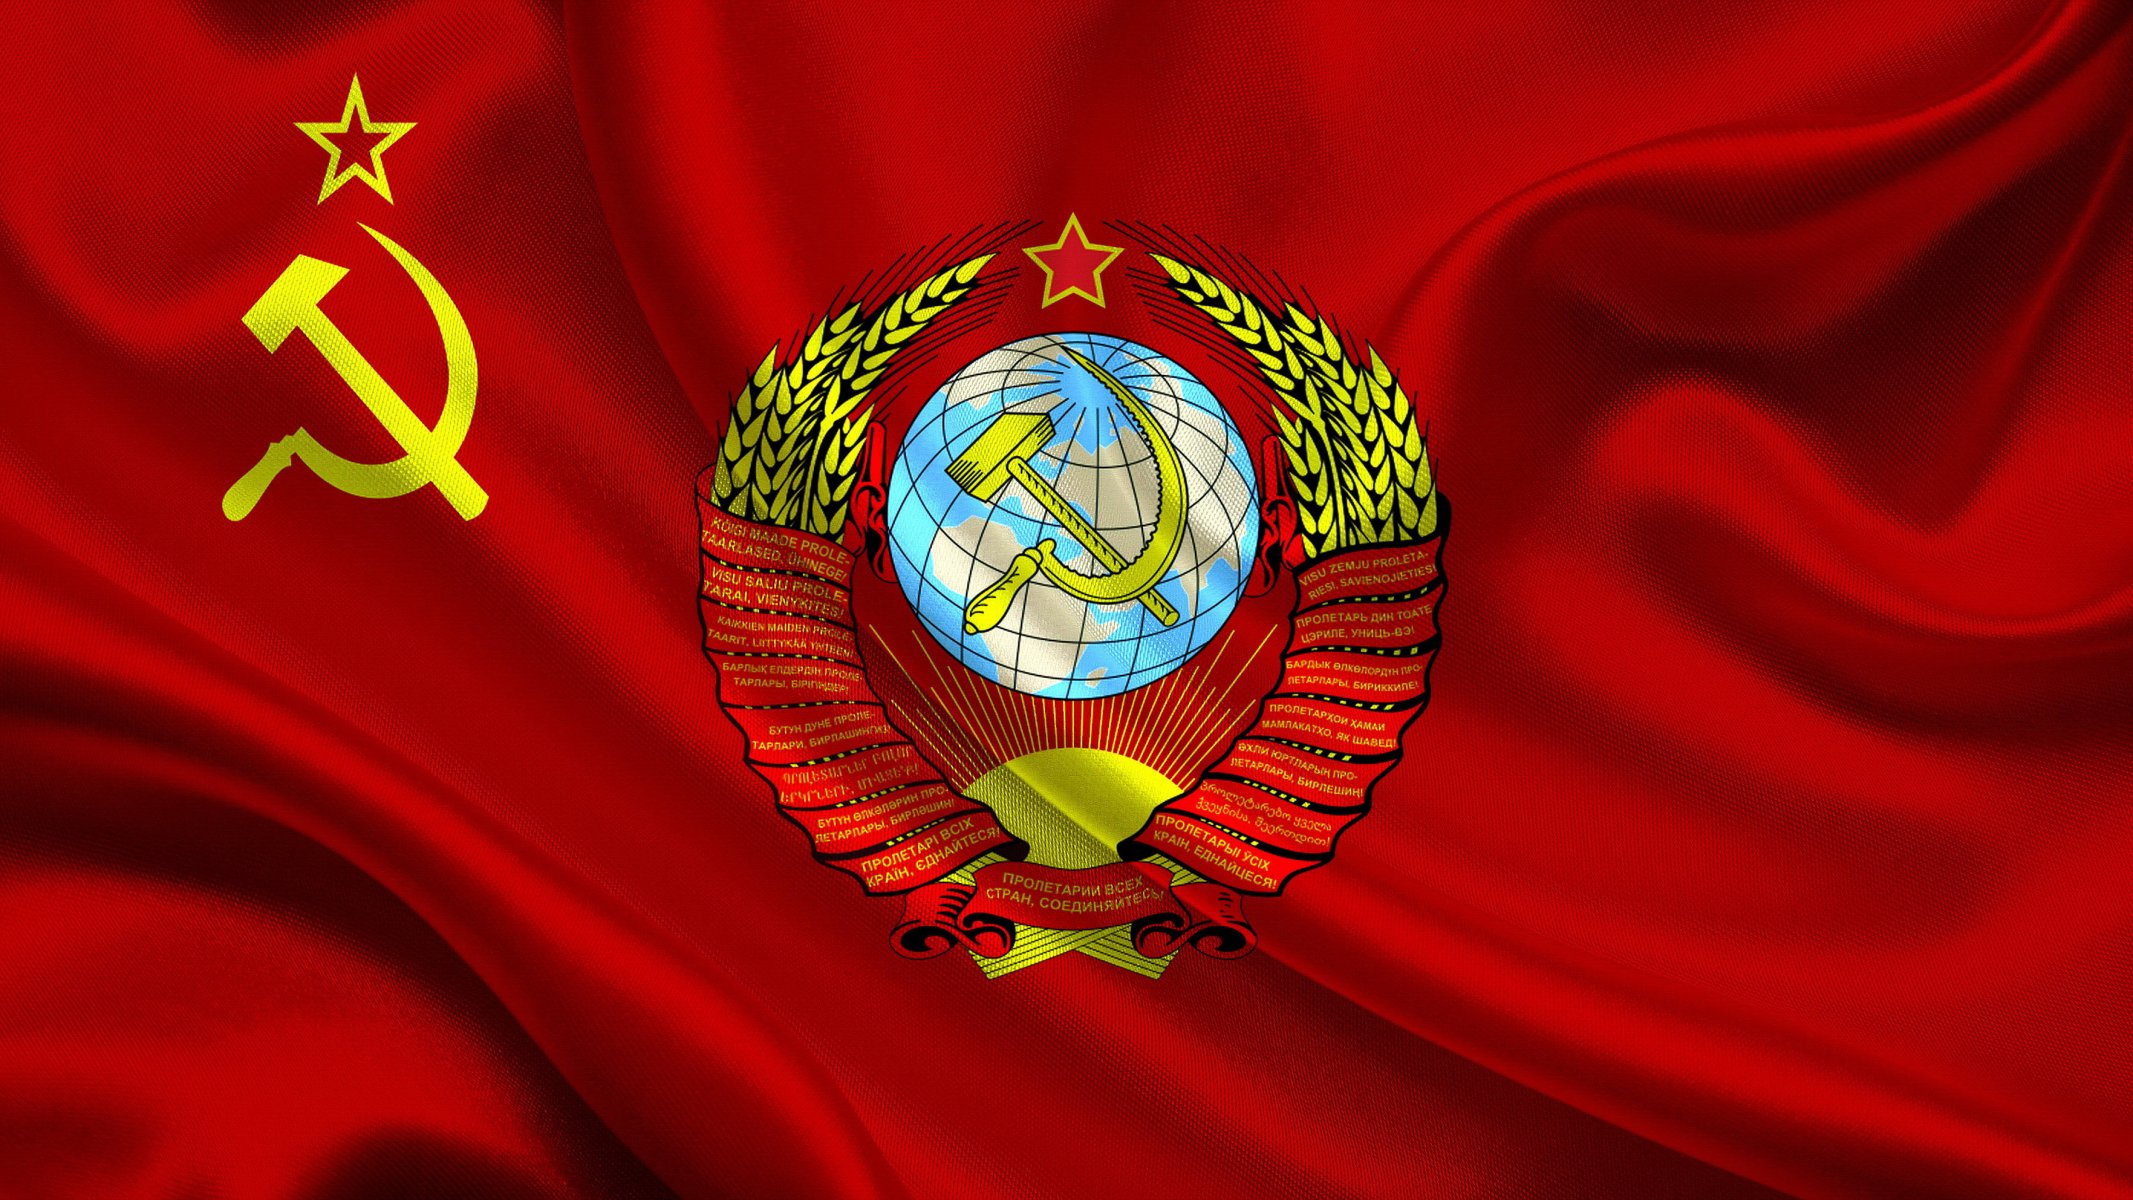 Символика СССР. Флаг и герб и красном полотне - обои на телефон